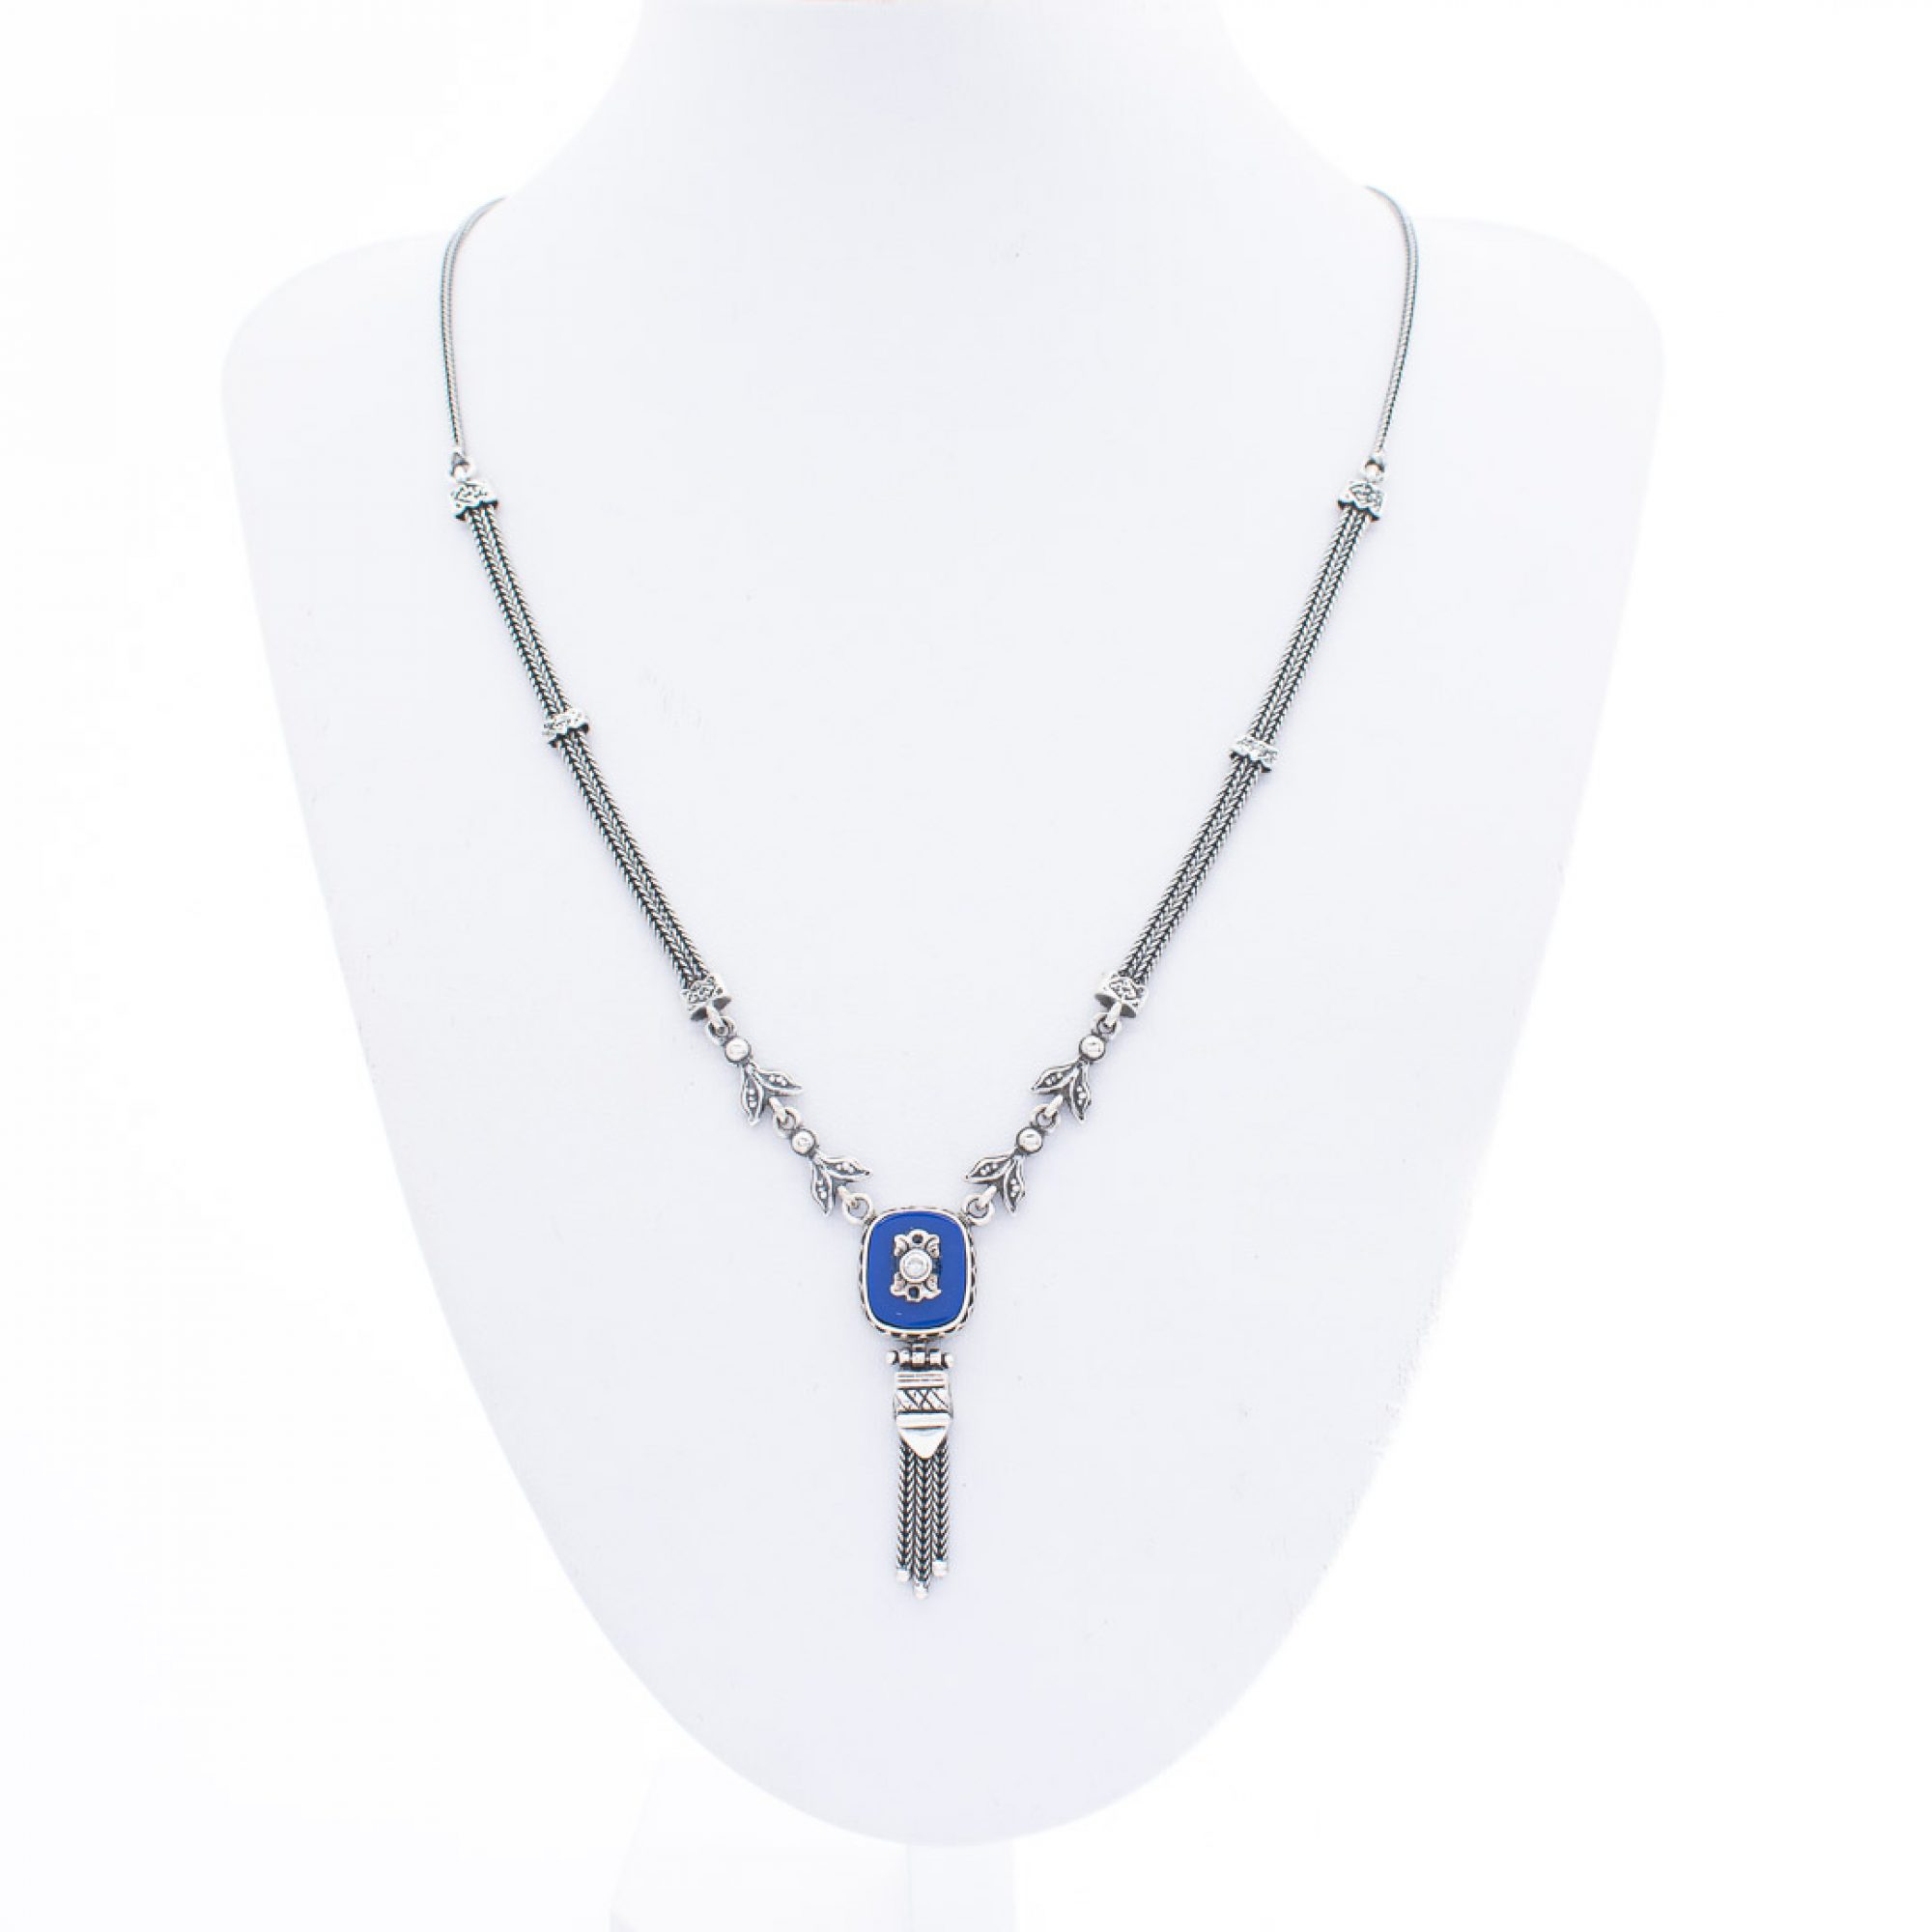 Oxidised necklace with lapis lazuli and zircon stones